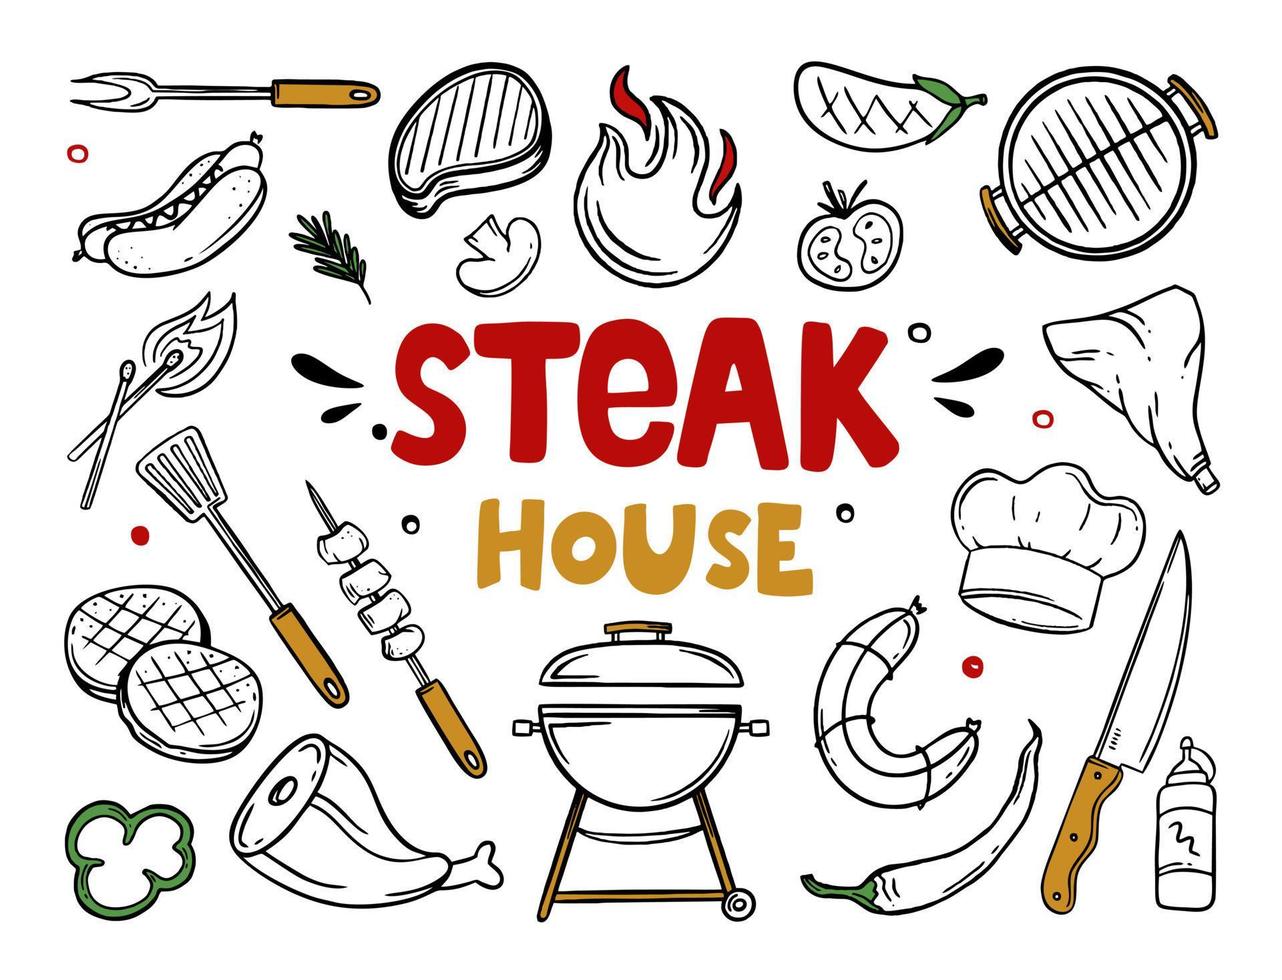 steak house voci di menu disegnate a mano del ristorante bar caffetteria illustrazione vettoriale di scarabocchi di cibo barbecue